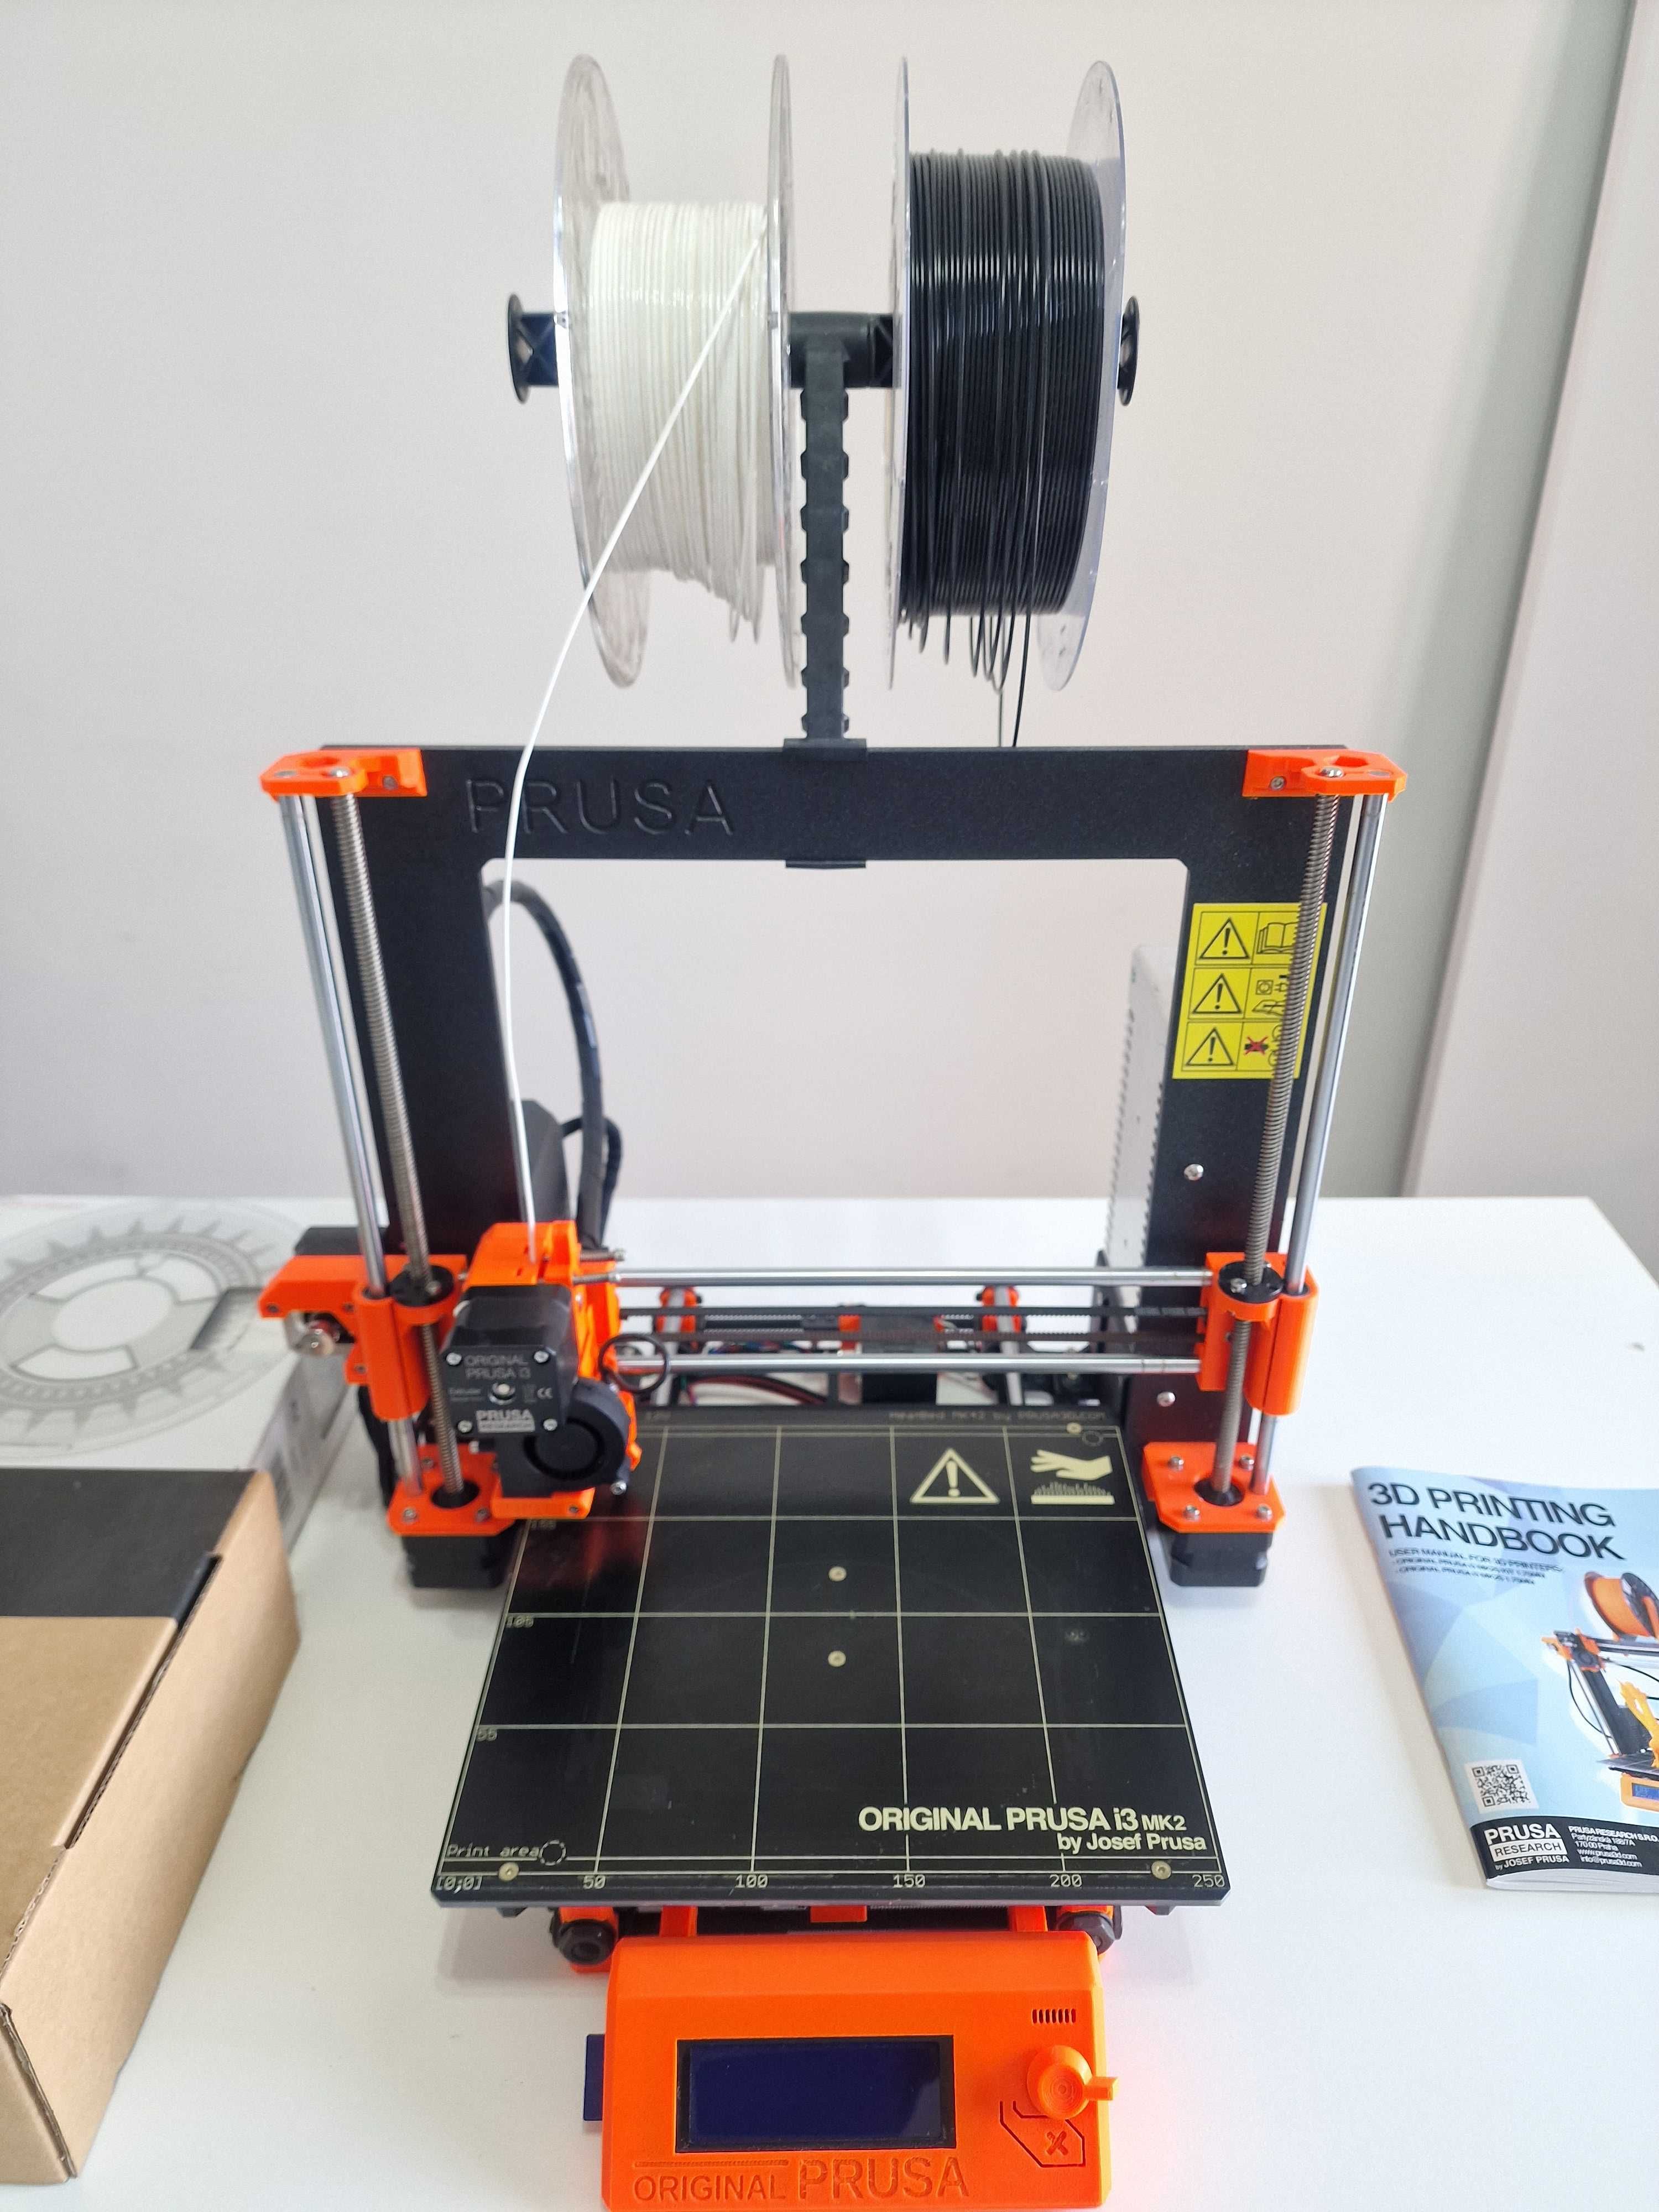 Imprimanta 3D Prusa MK2s - foarte putin folosita